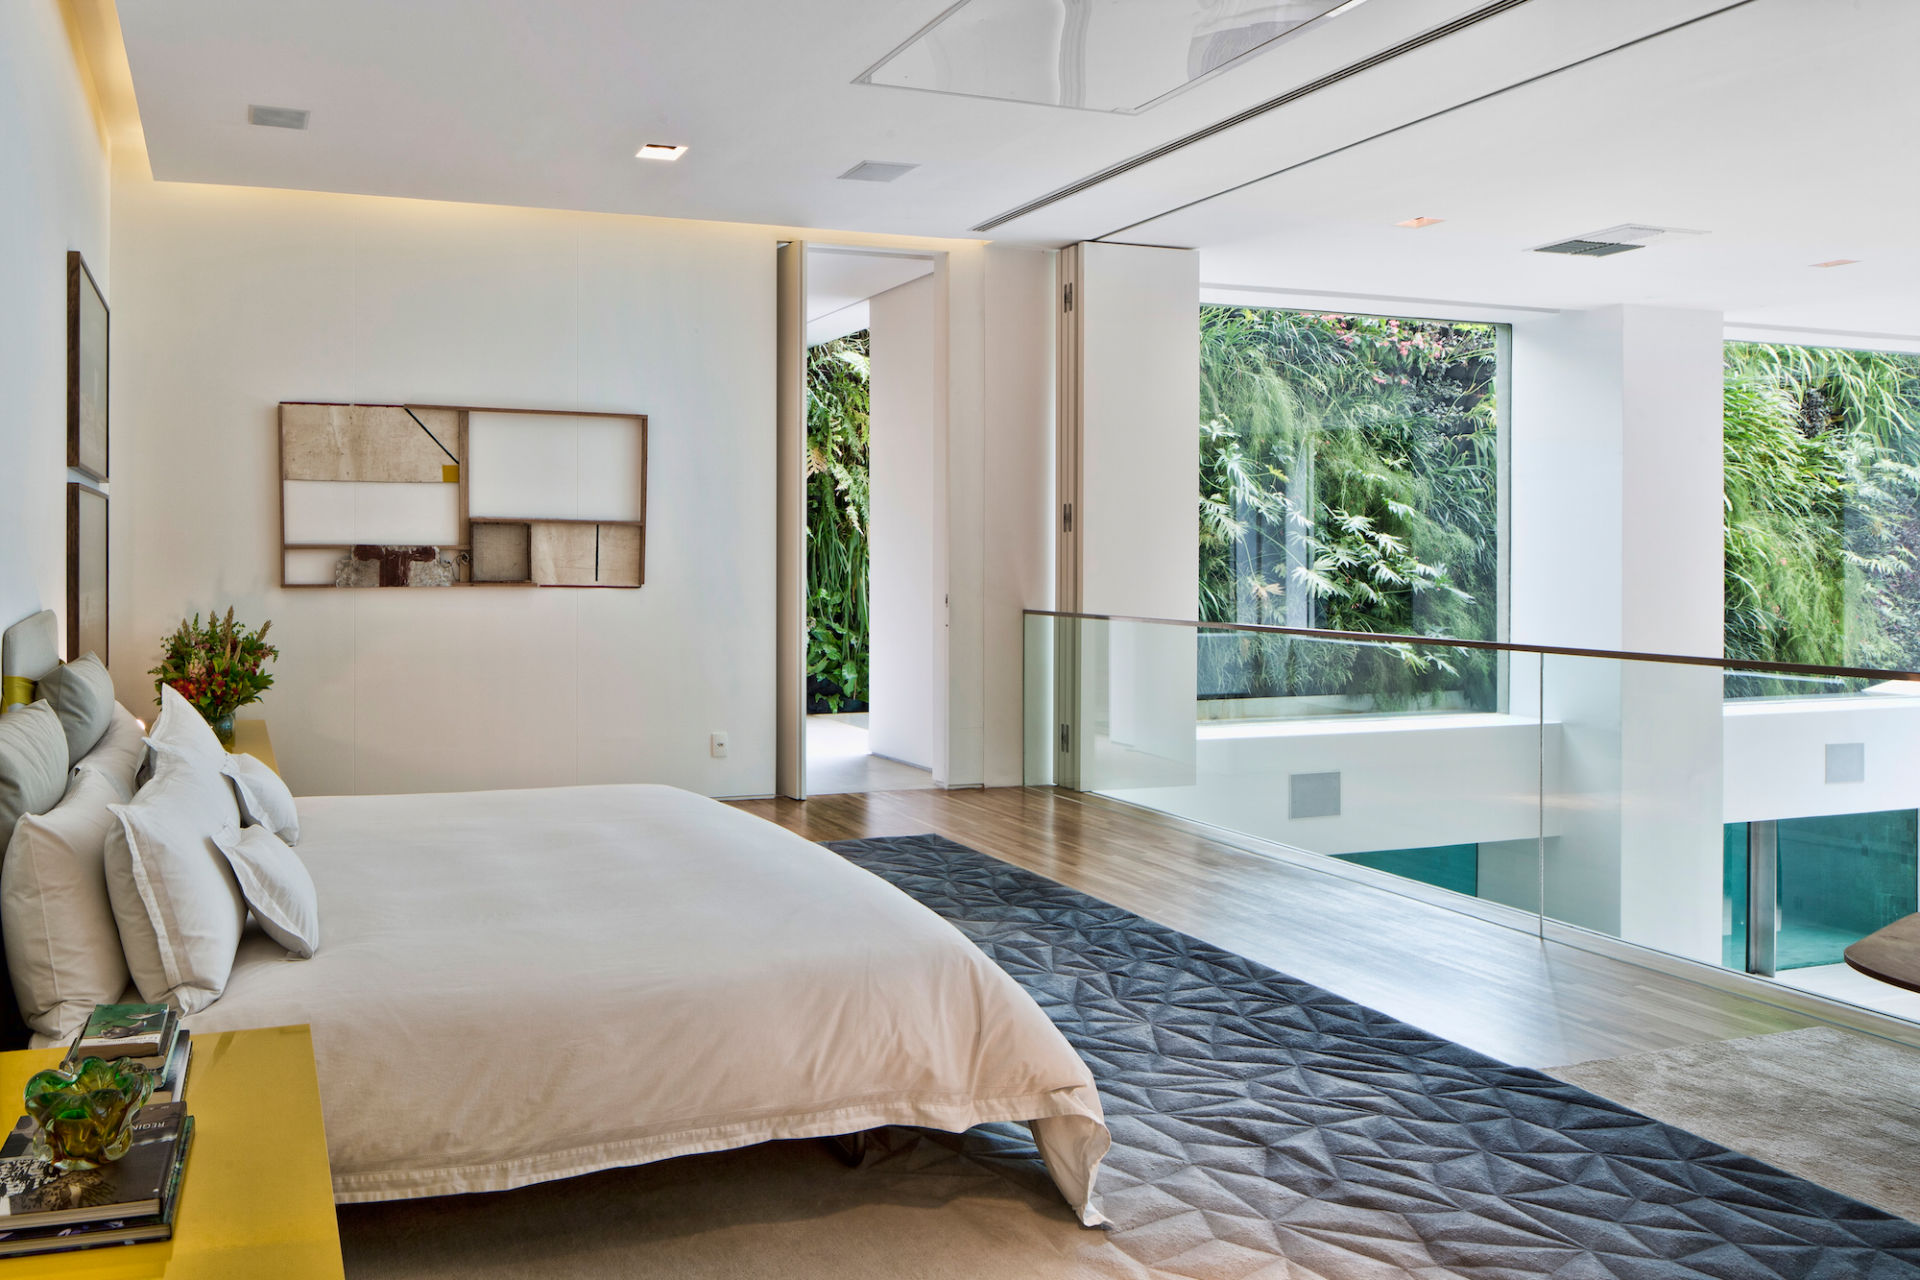 Ein Schwimmbad im Wohnzimmer: Das unglaubliche Duplex Anwesen in Sao Paolo 4